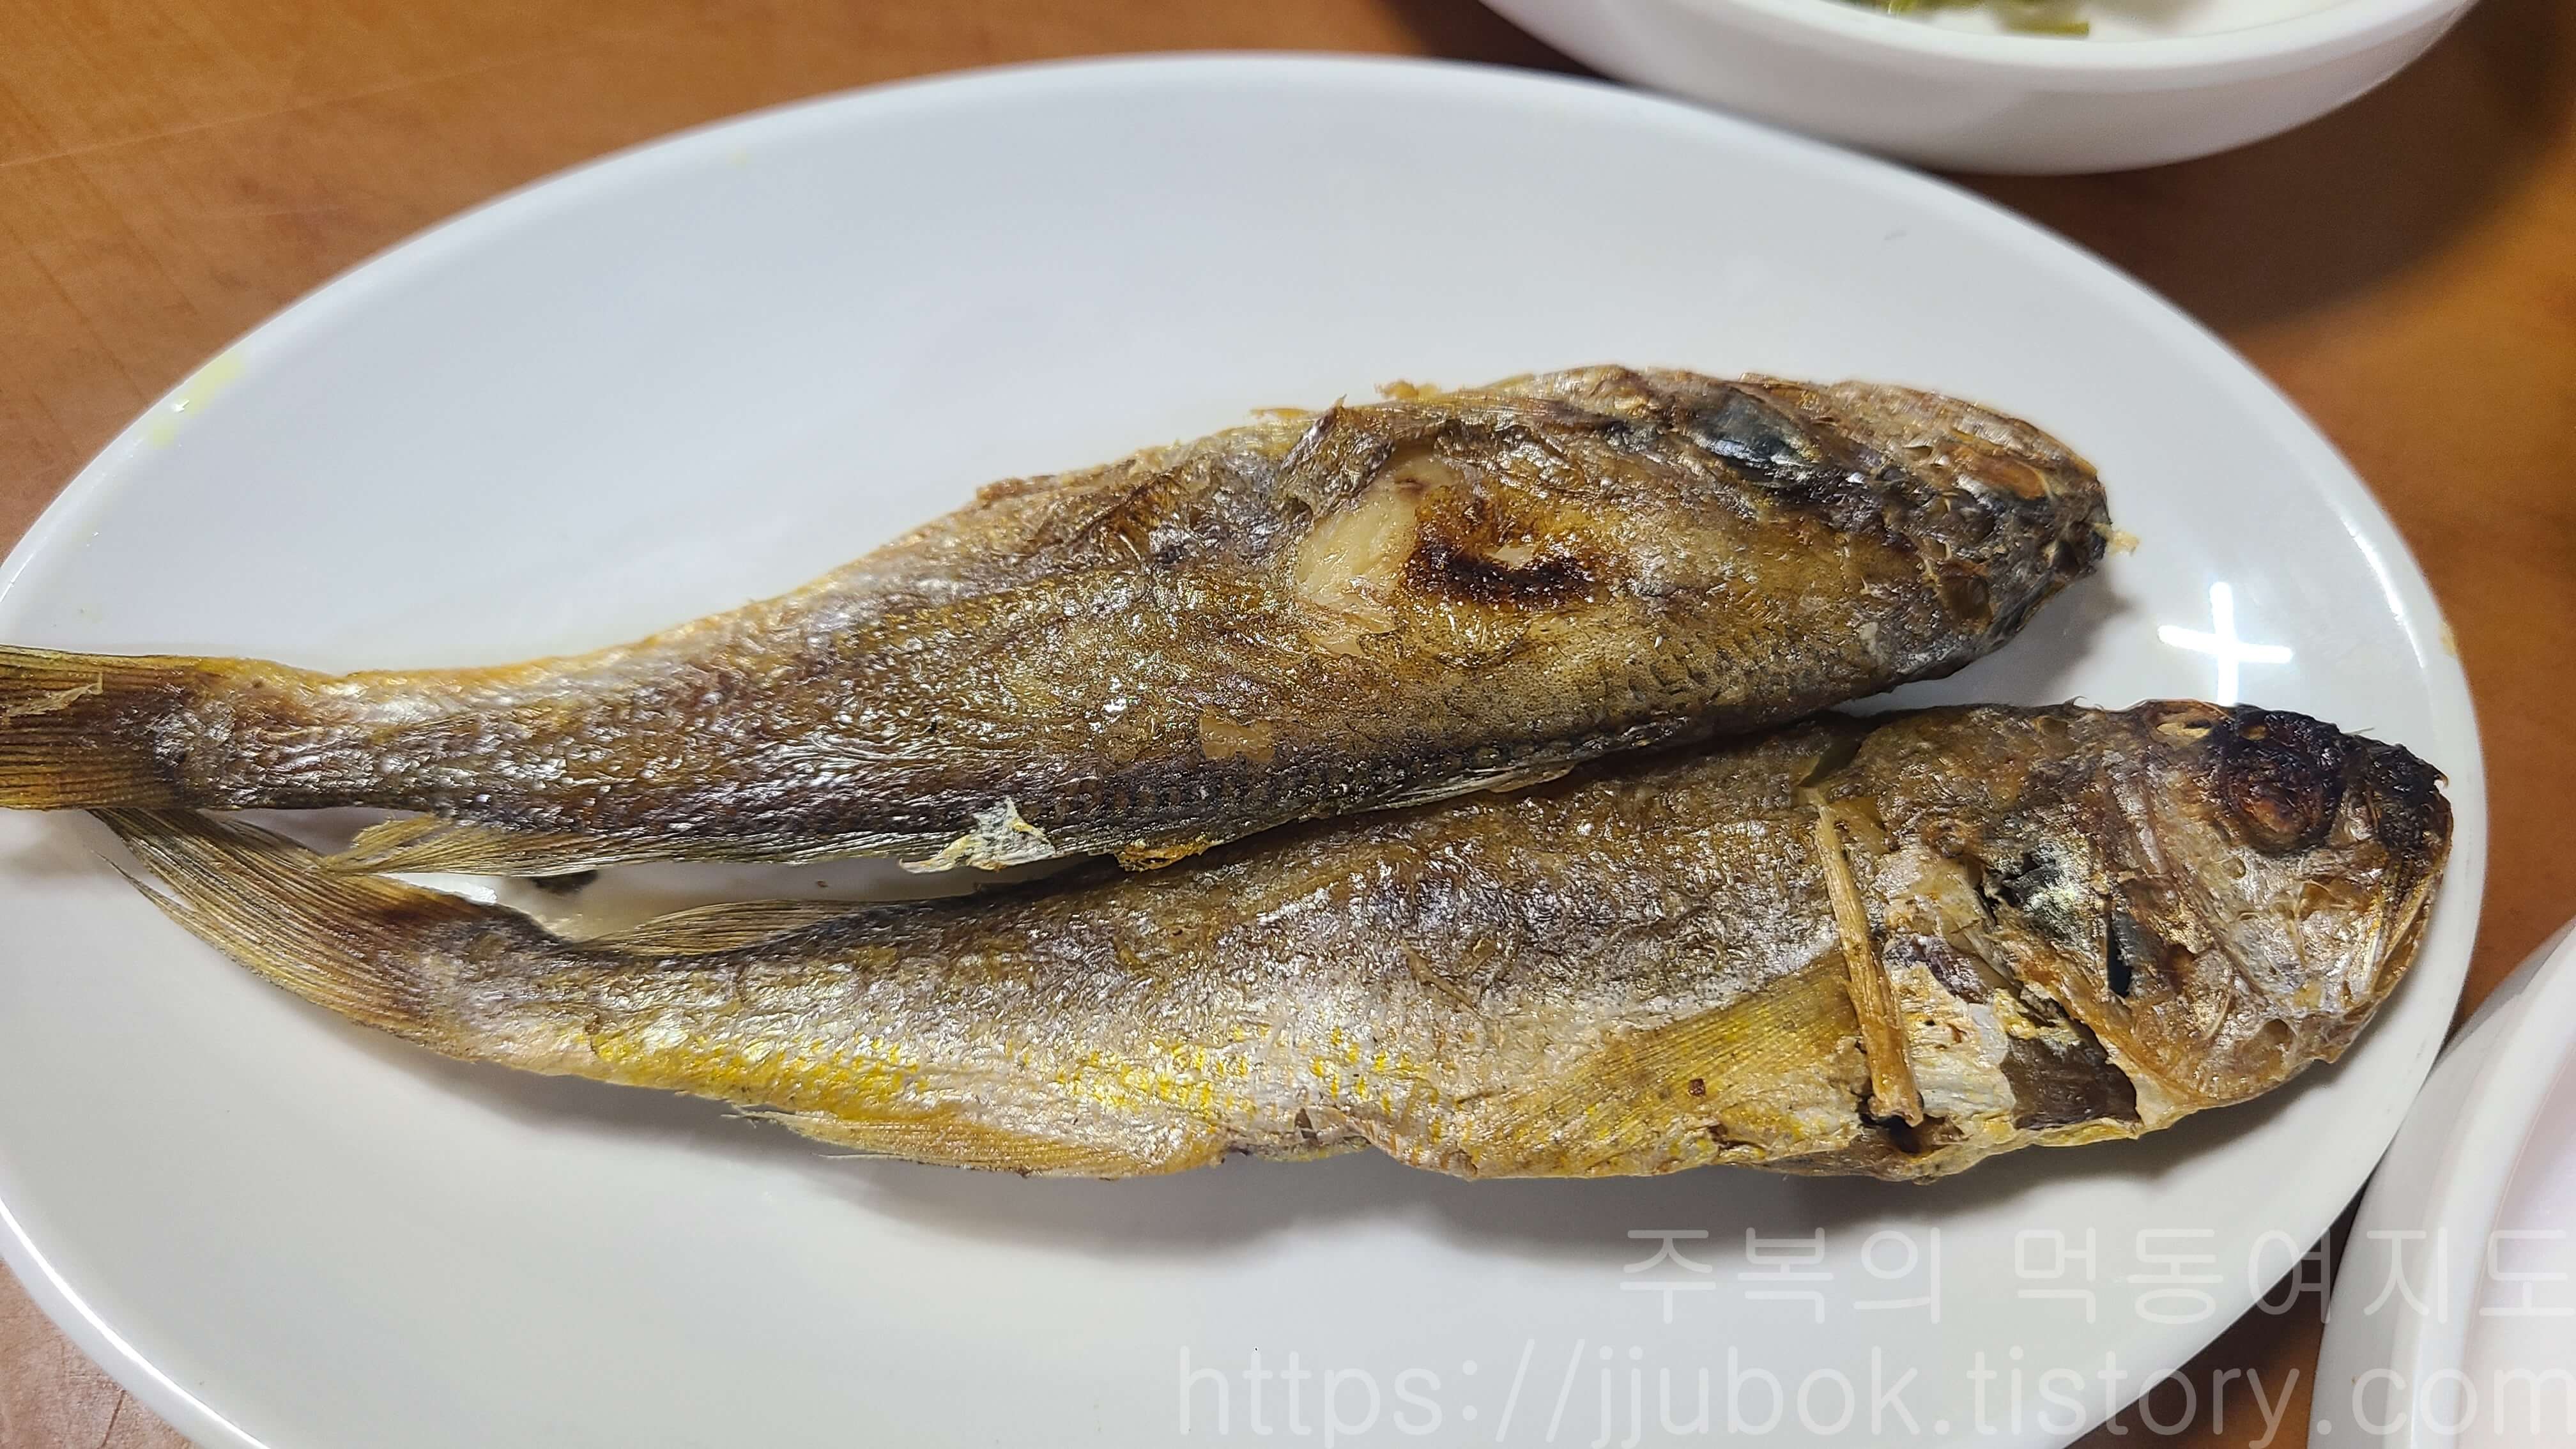 부흥기사식당-밑반찬-생선-튀김